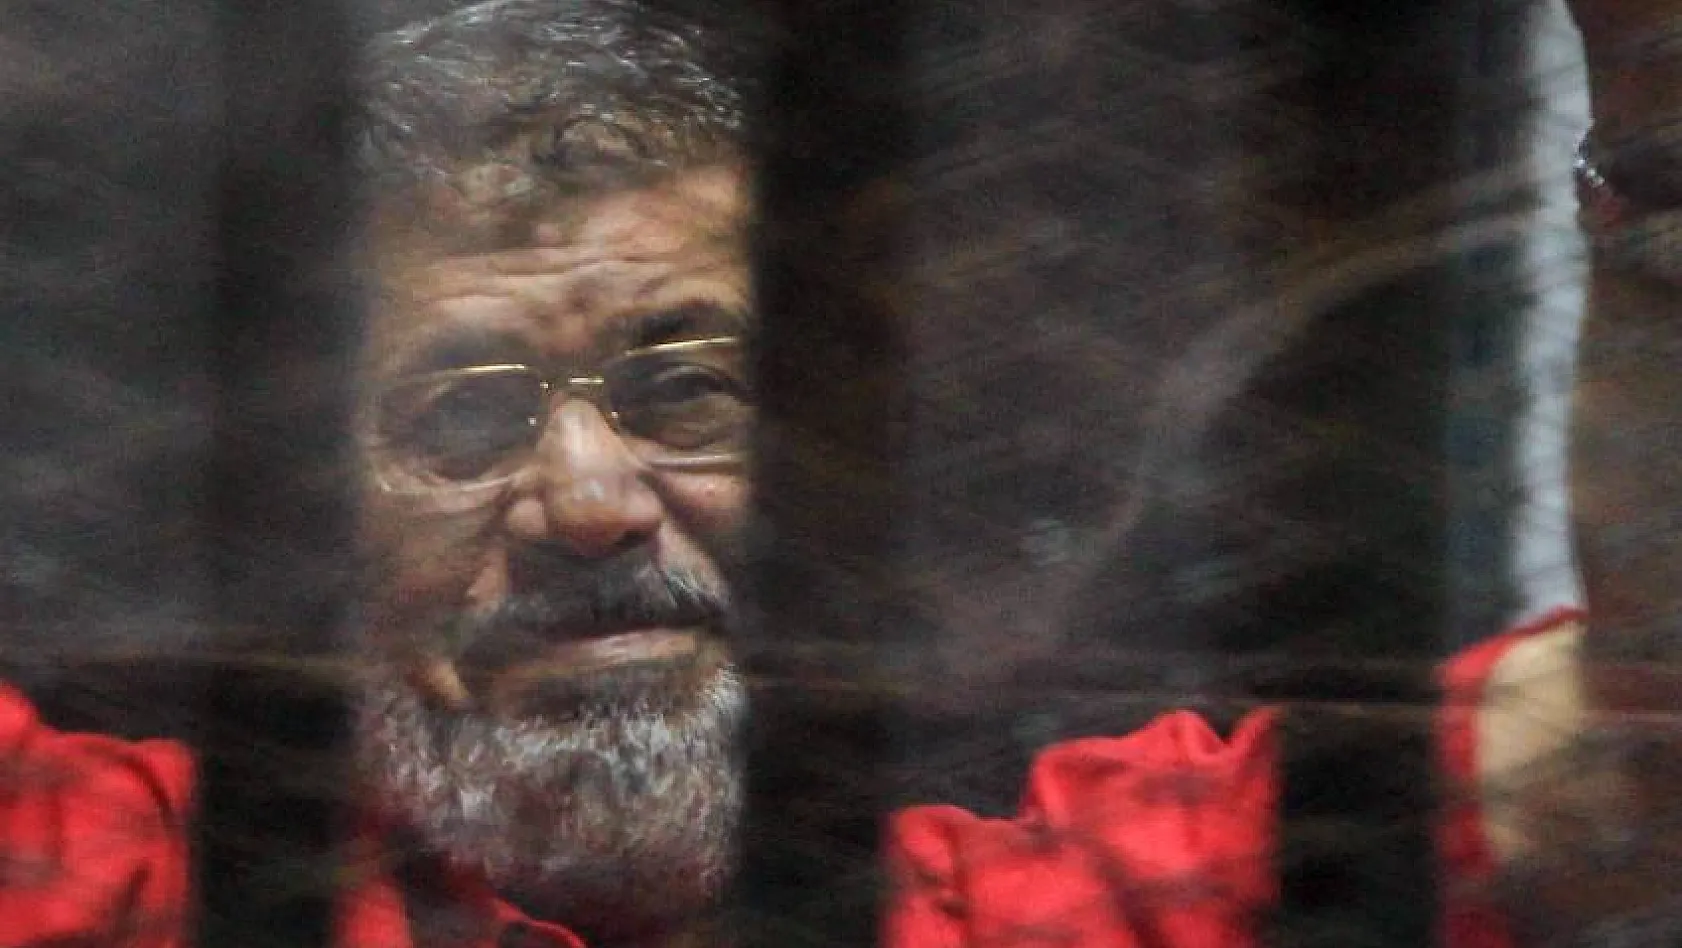 Eski Mısır Devlet Başkanı Muhammed Mursi hayatını kaybetti